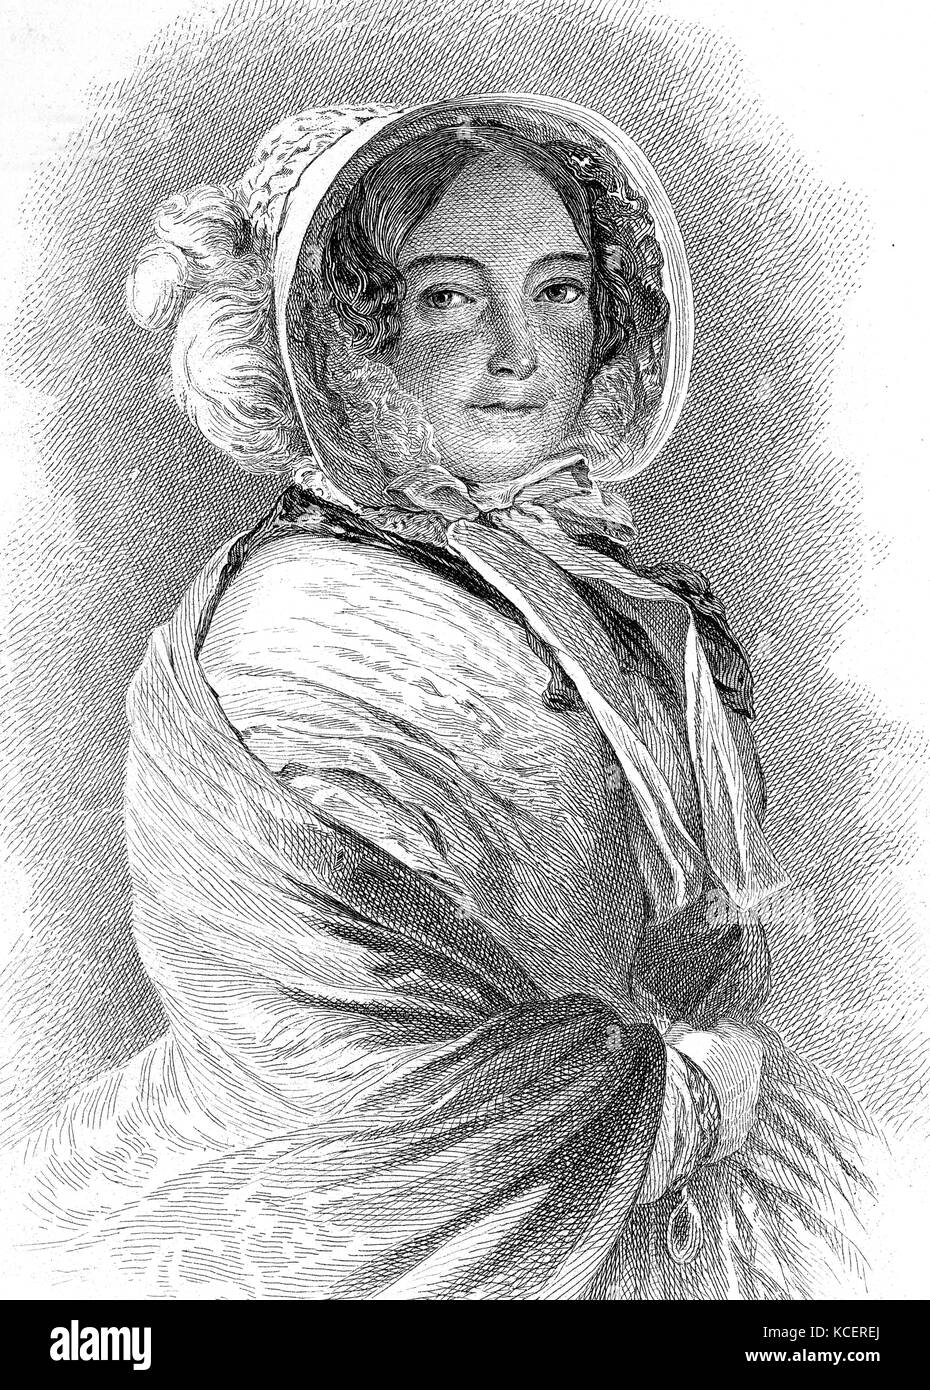 Ritratto della Principessa Victoria di Sassonia Coburgo - Gotha-Saalfeld (1786-1861) una principessa tedesca e madre della Regina Victoria (1819-1901). Datata del XIX secolo Foto Stock